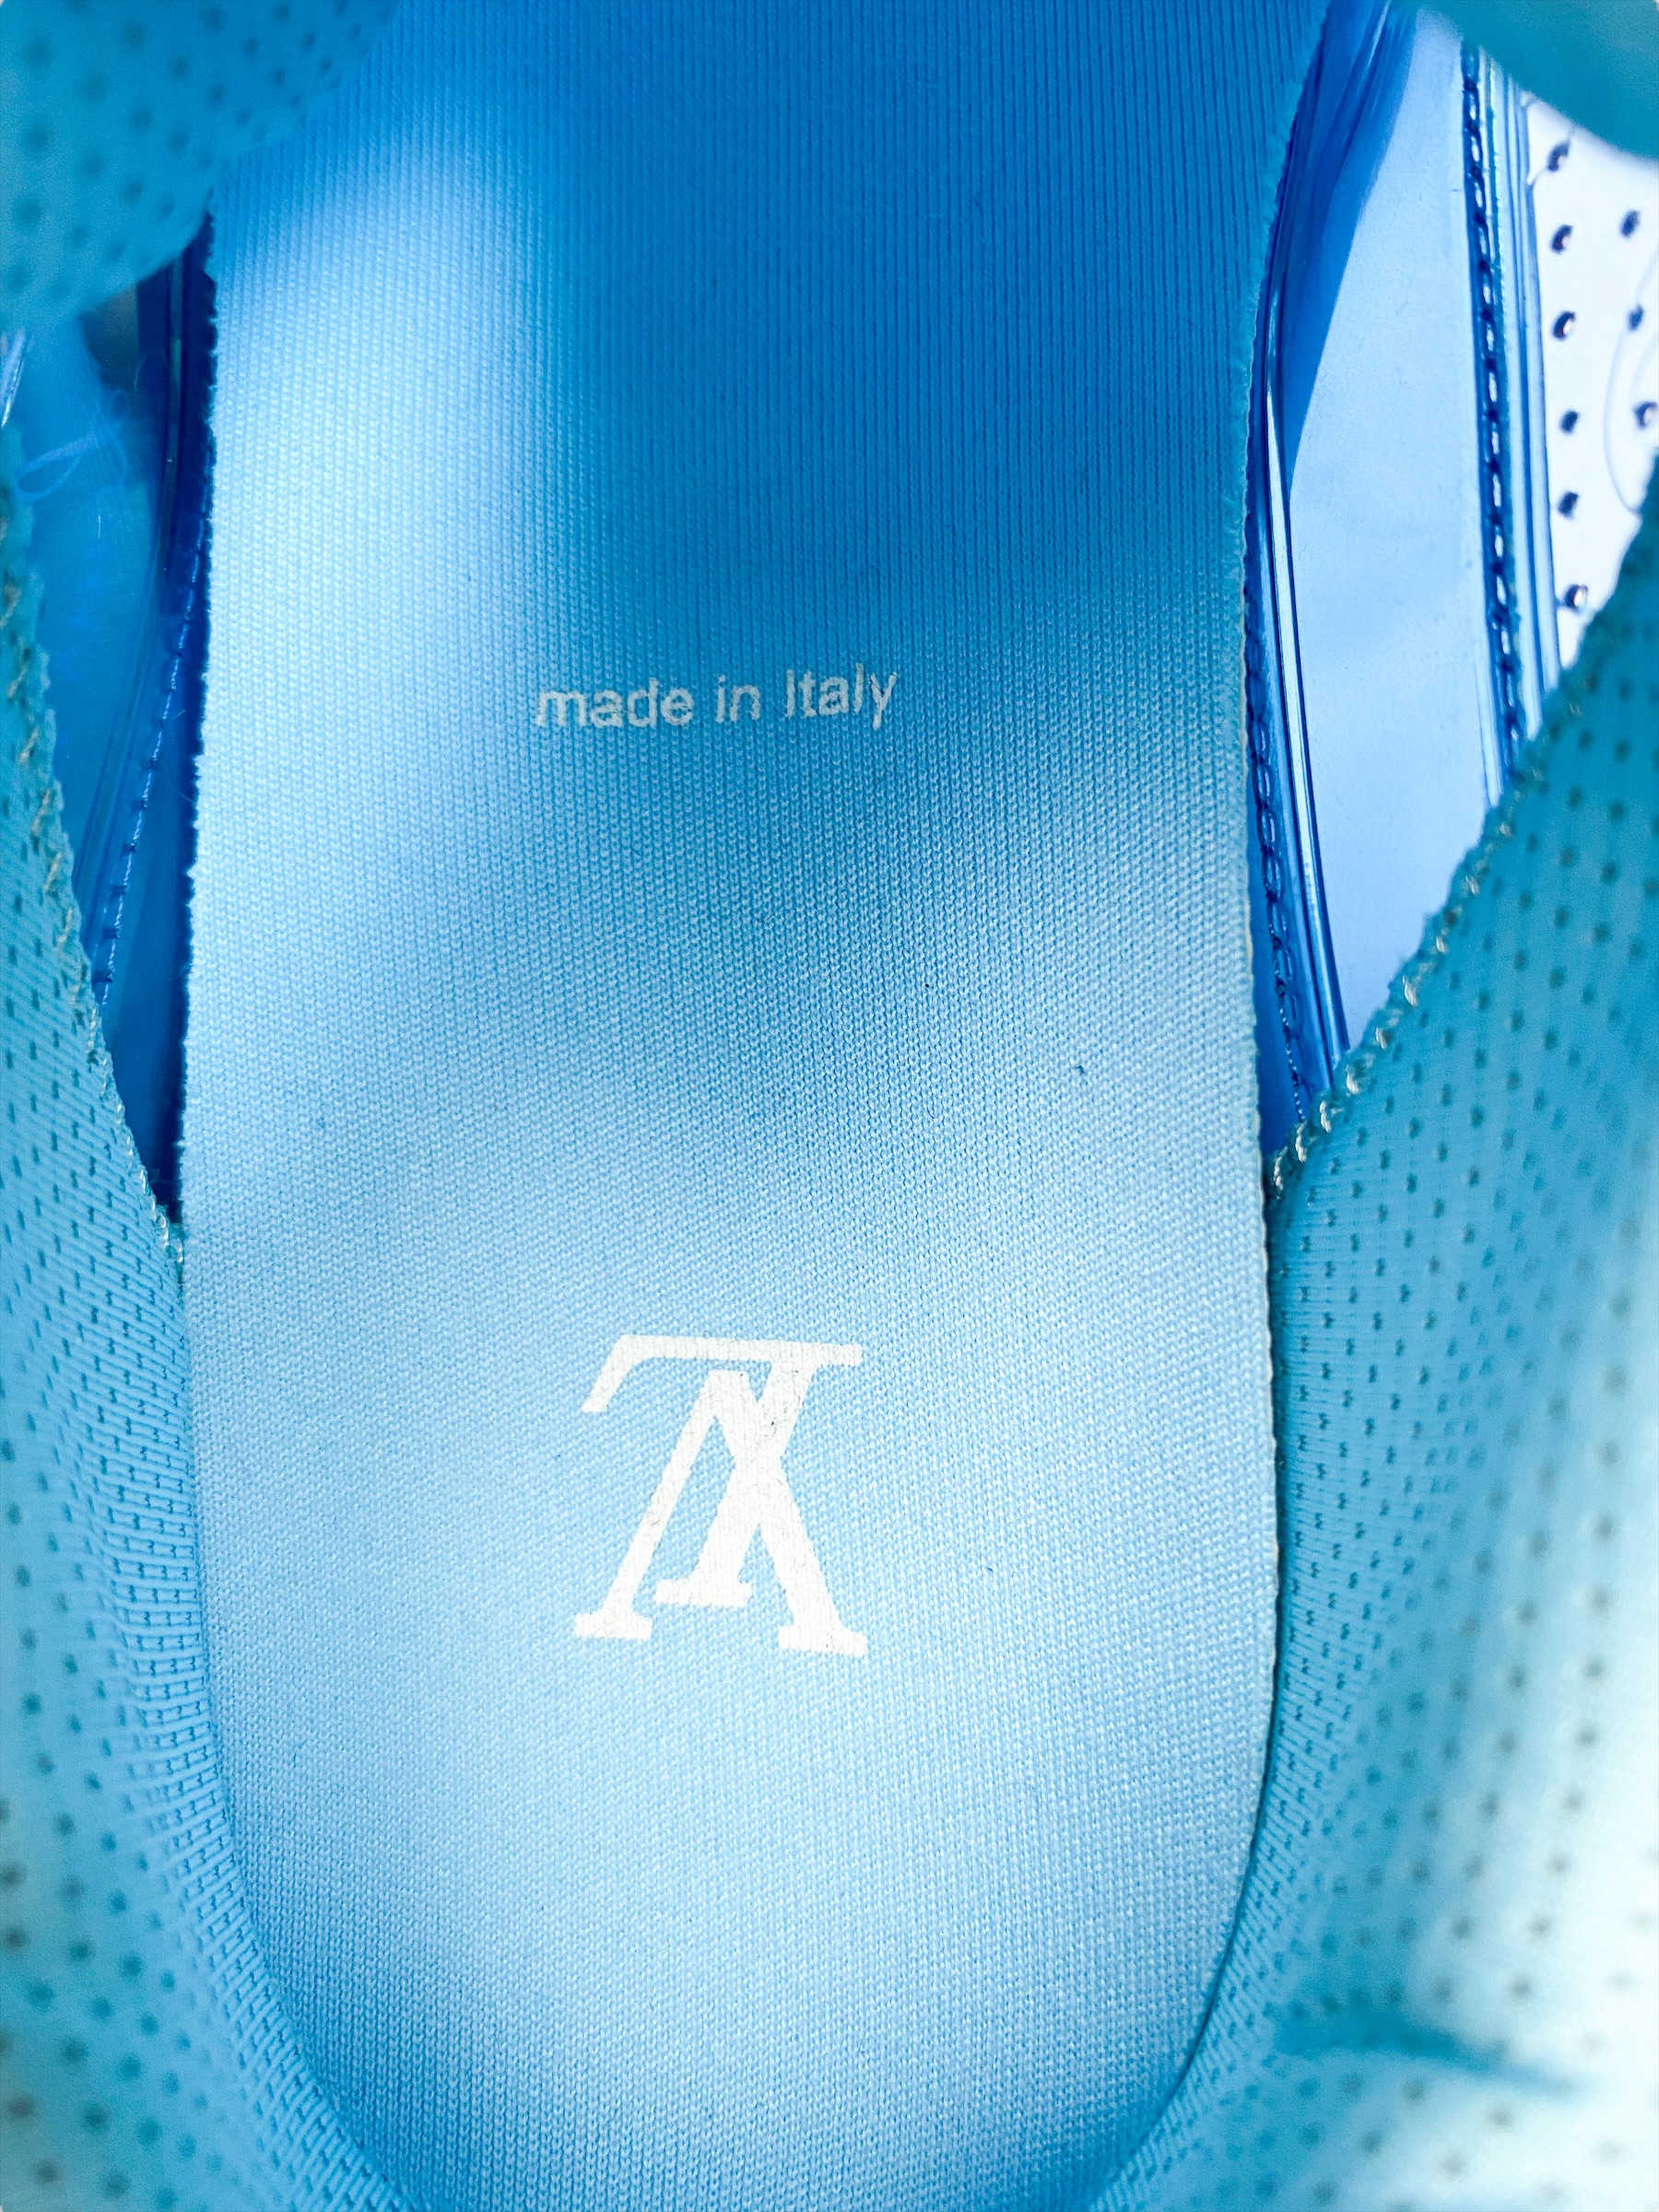 Louis Vuitton Men's Transparent Clear Blue Trainer sneakers Size 7.5 US